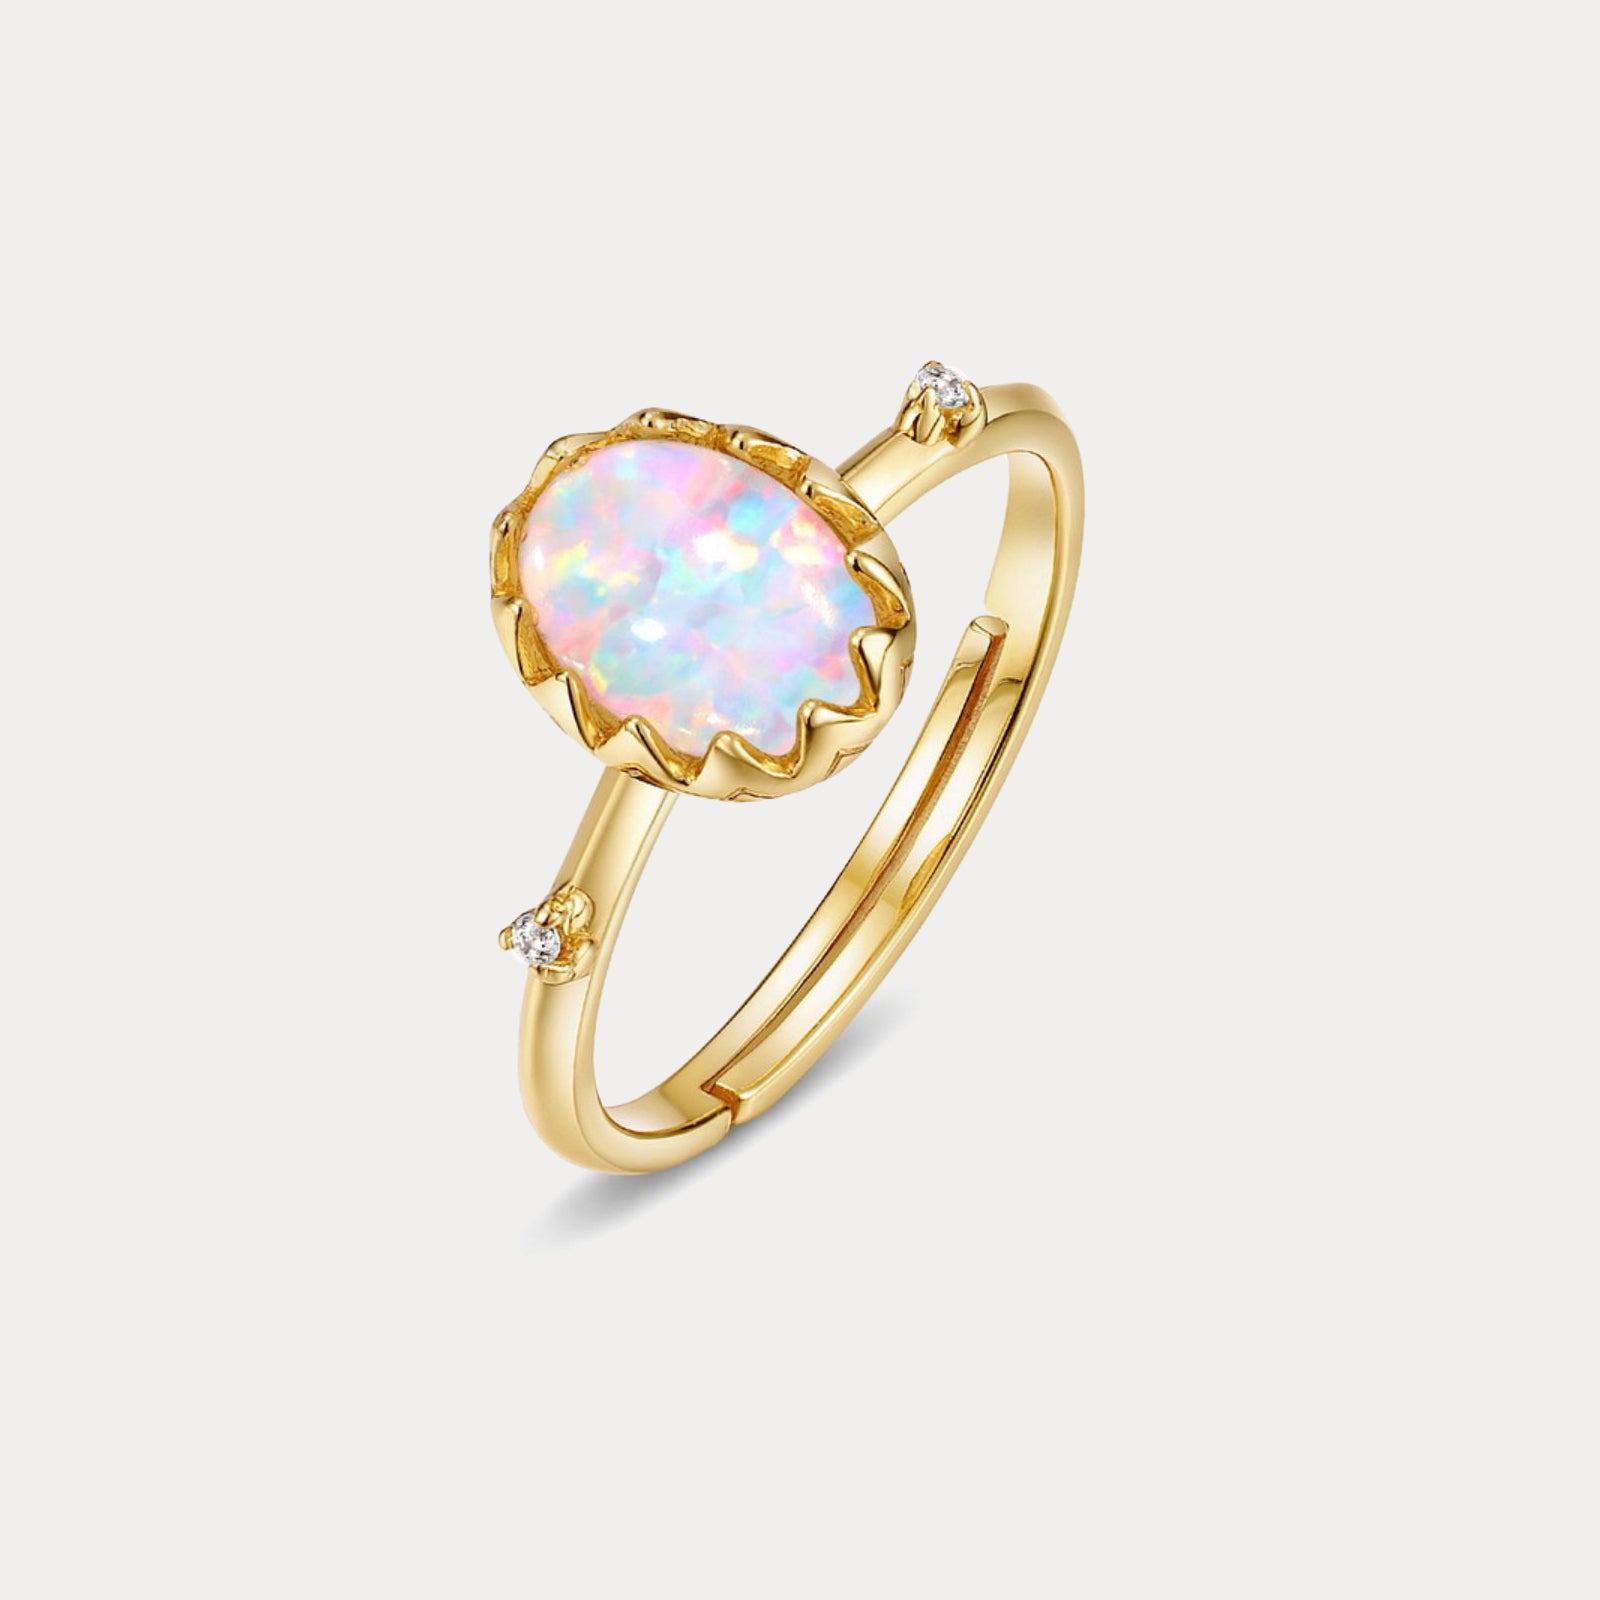 Selenichast opal ring